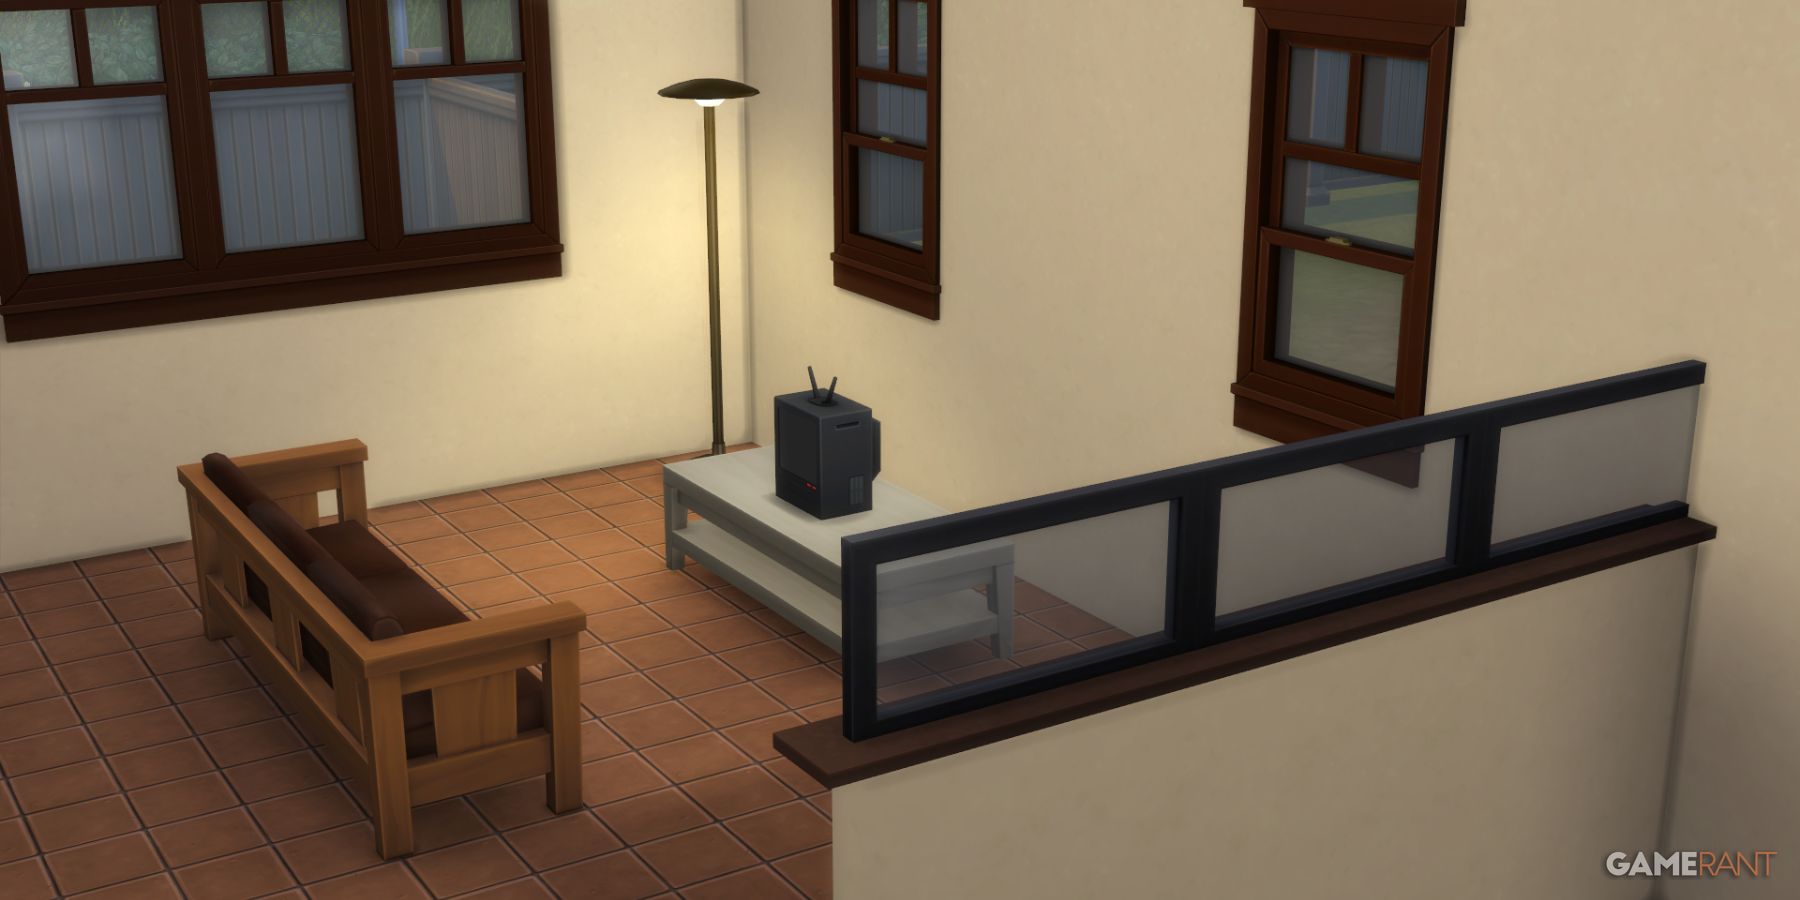 The Sims 4 Half Wall Divider